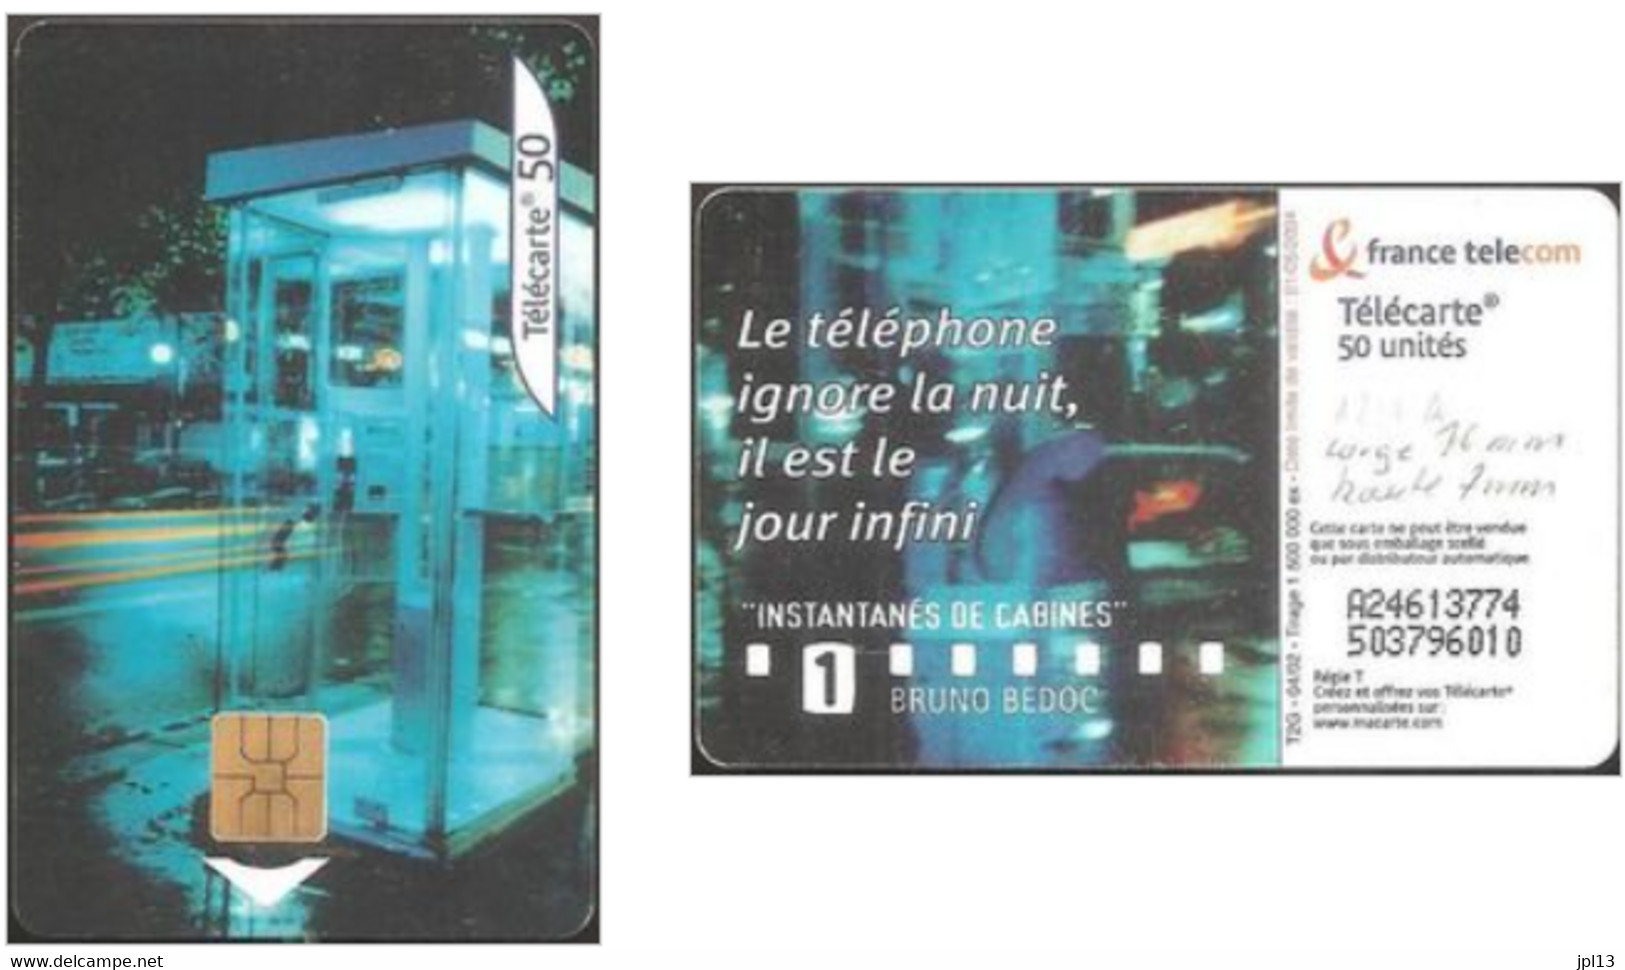 Carte à Puce - France - France Télécom - Instantanes 1 - B. Bedoc, Réf.1211A, Série L 21mm H 5mm - 2002